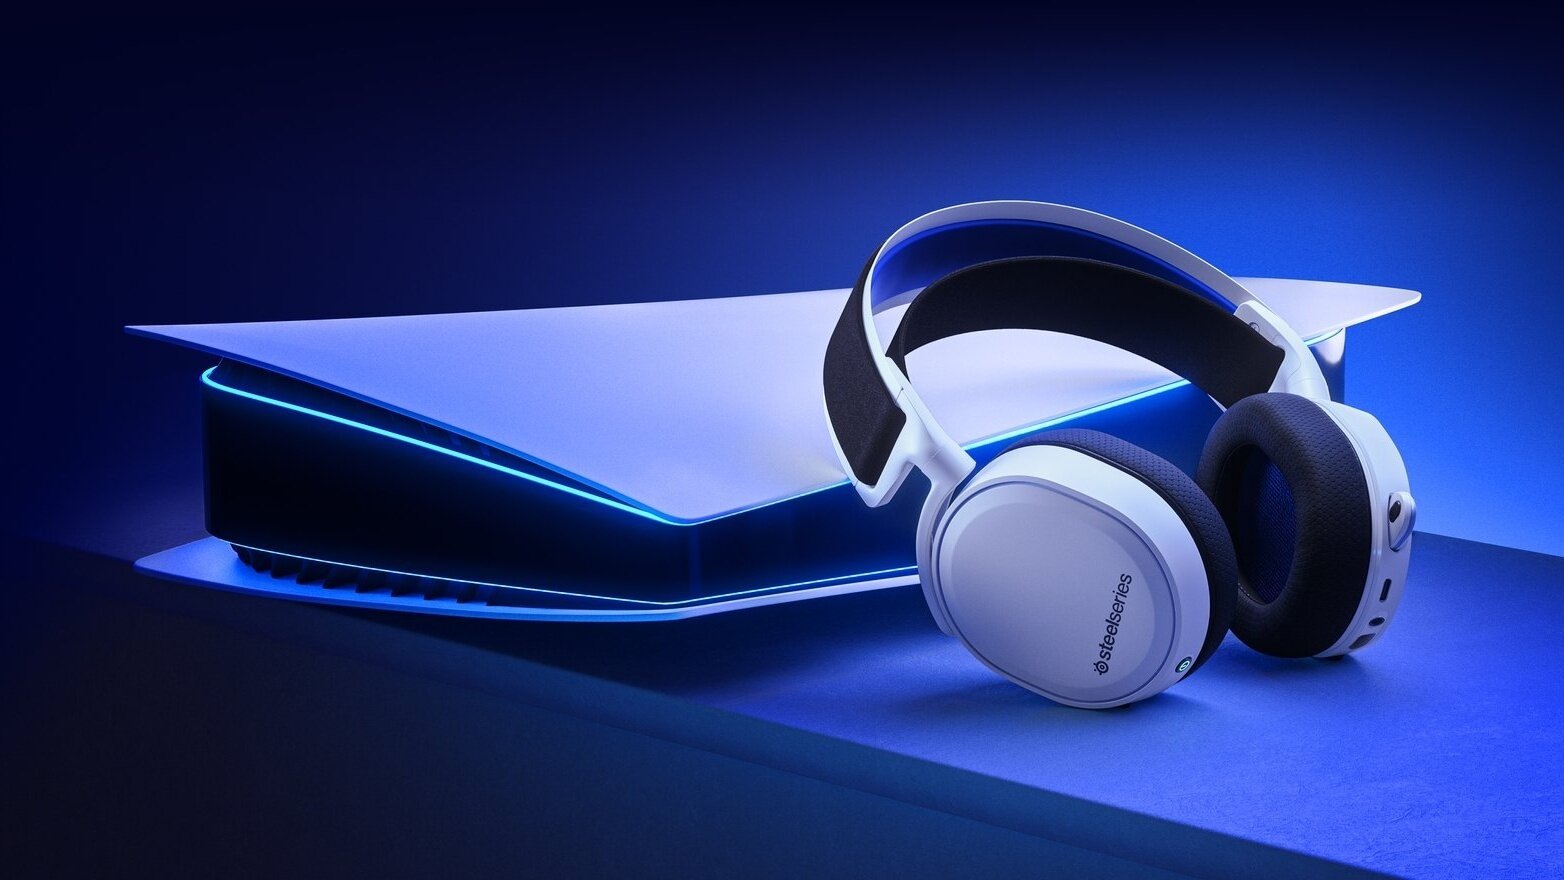 Prémiový zvuk pro PC i PlayStation. Testujeme sluchátka SteelSeries Arctis 7P+